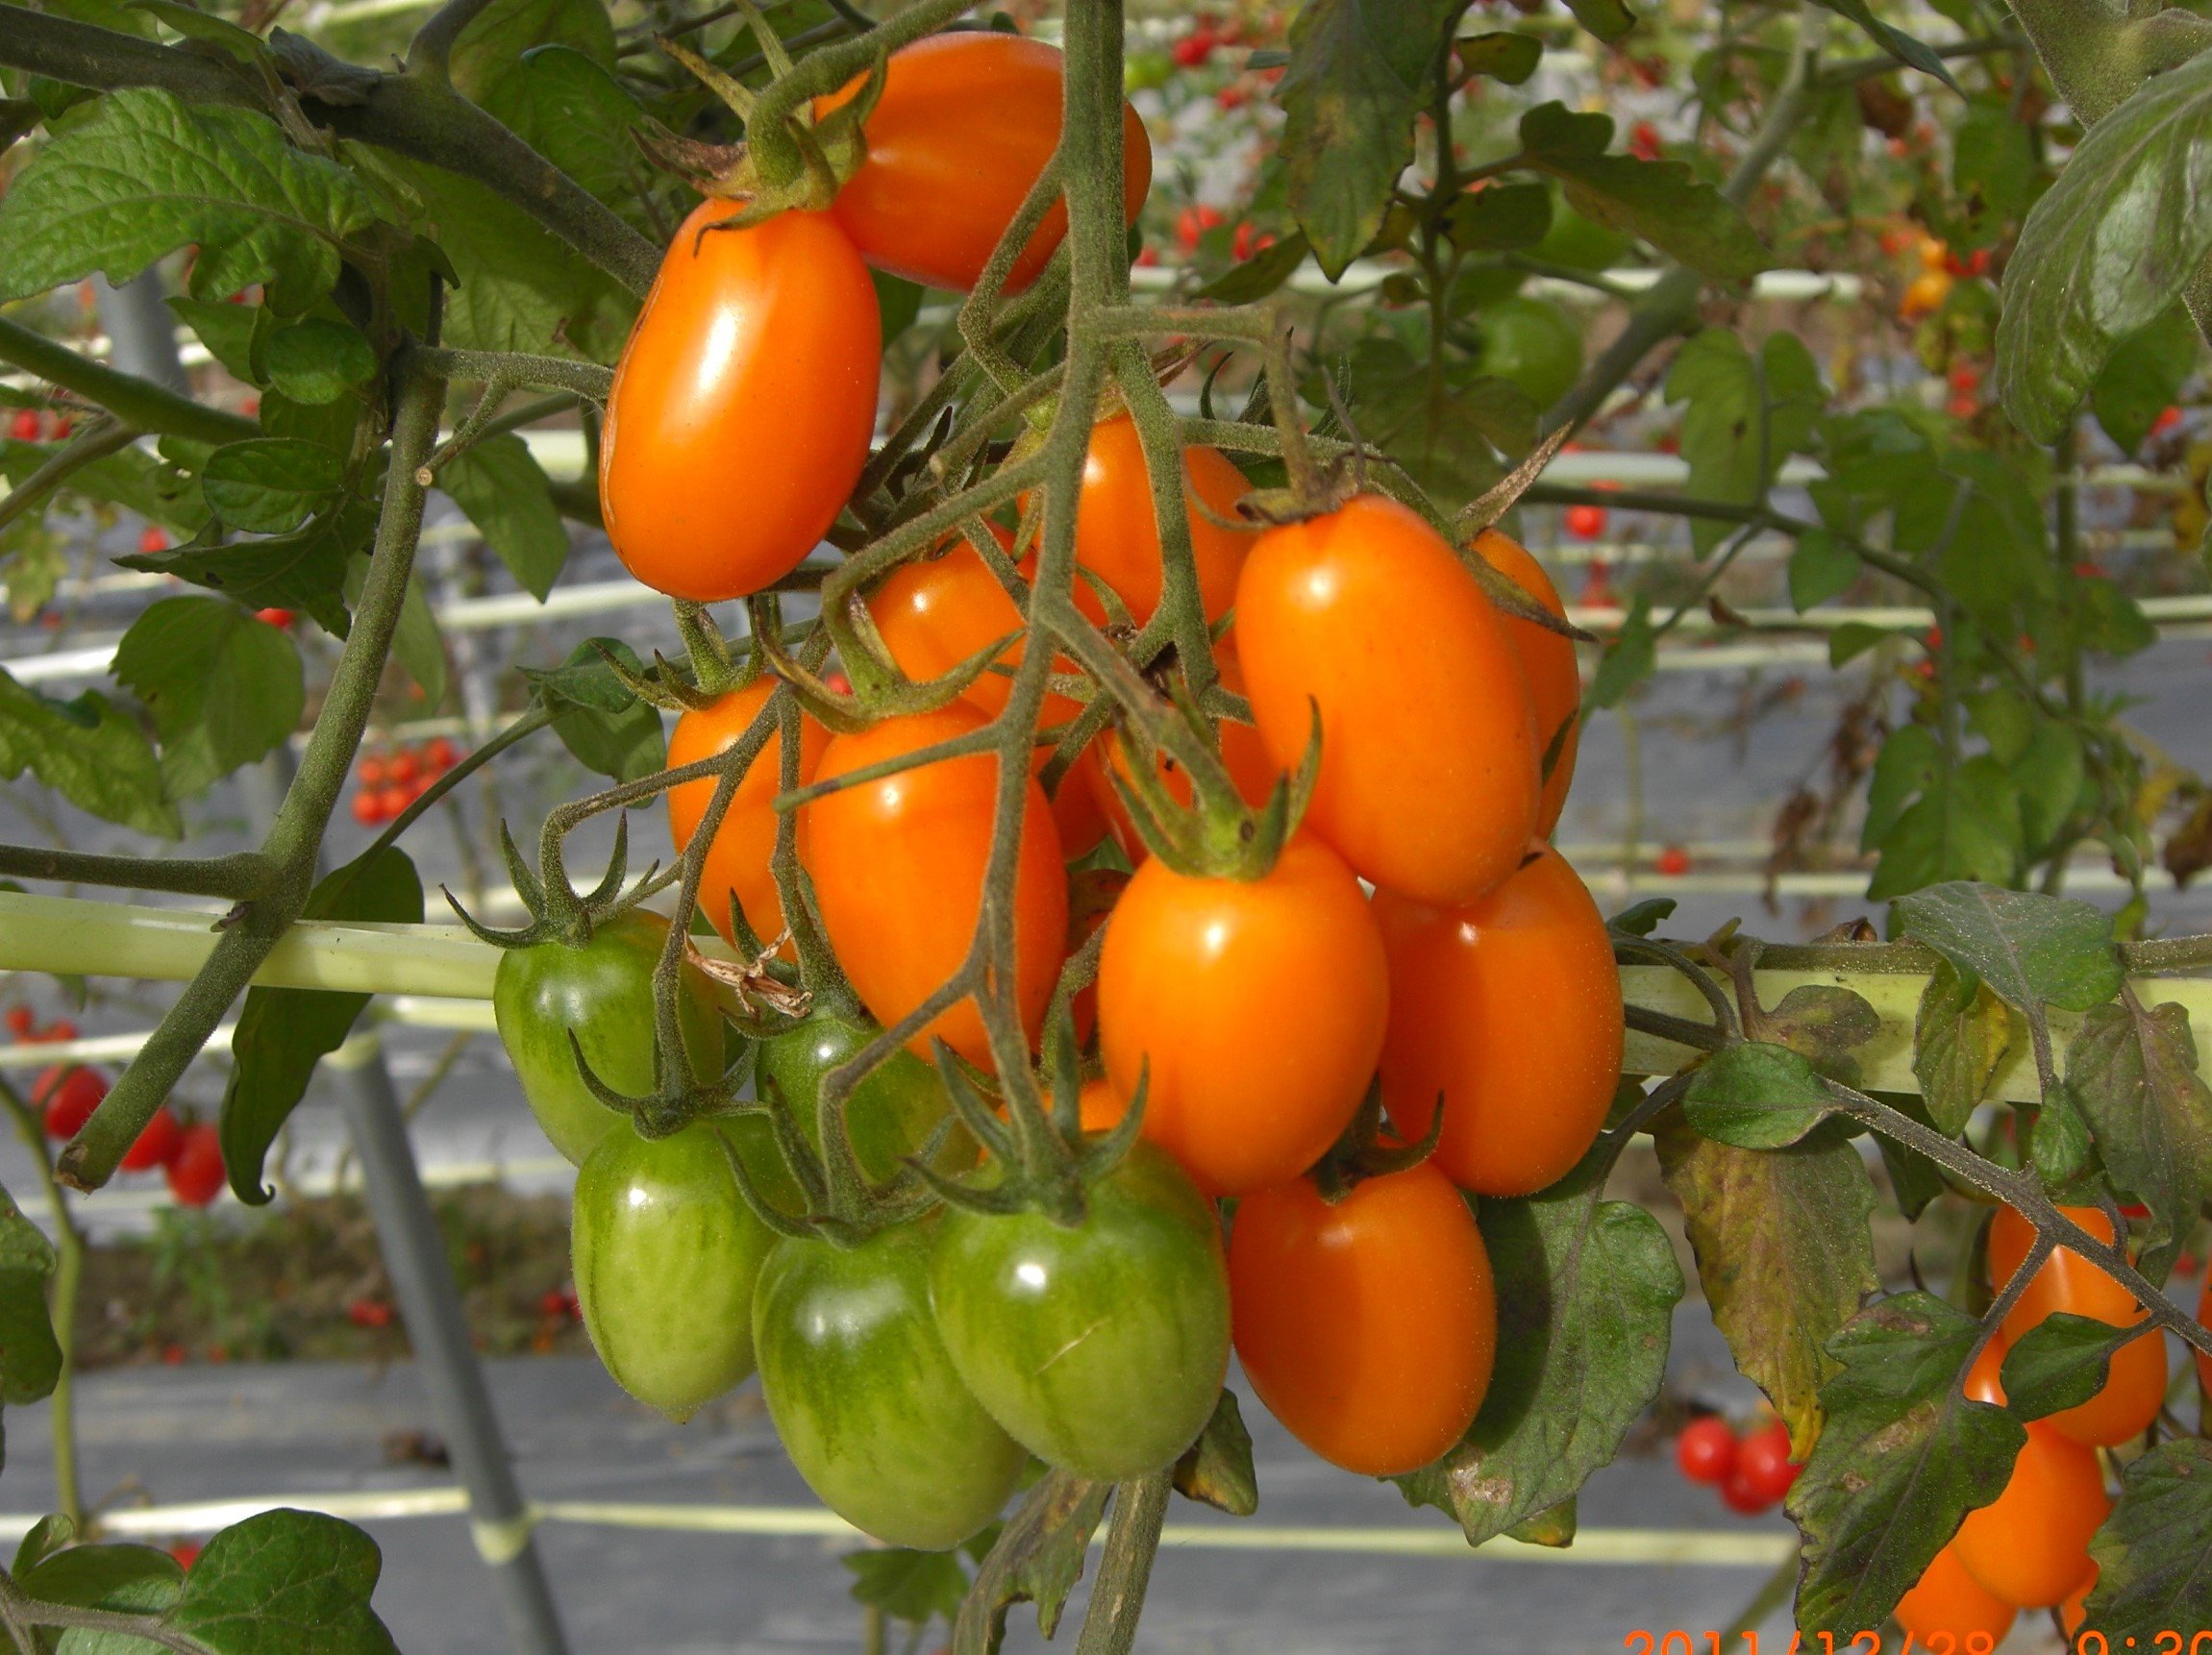 在健康風潮引領下,黃色,橙色番茄在臺灣已佔有一席之地